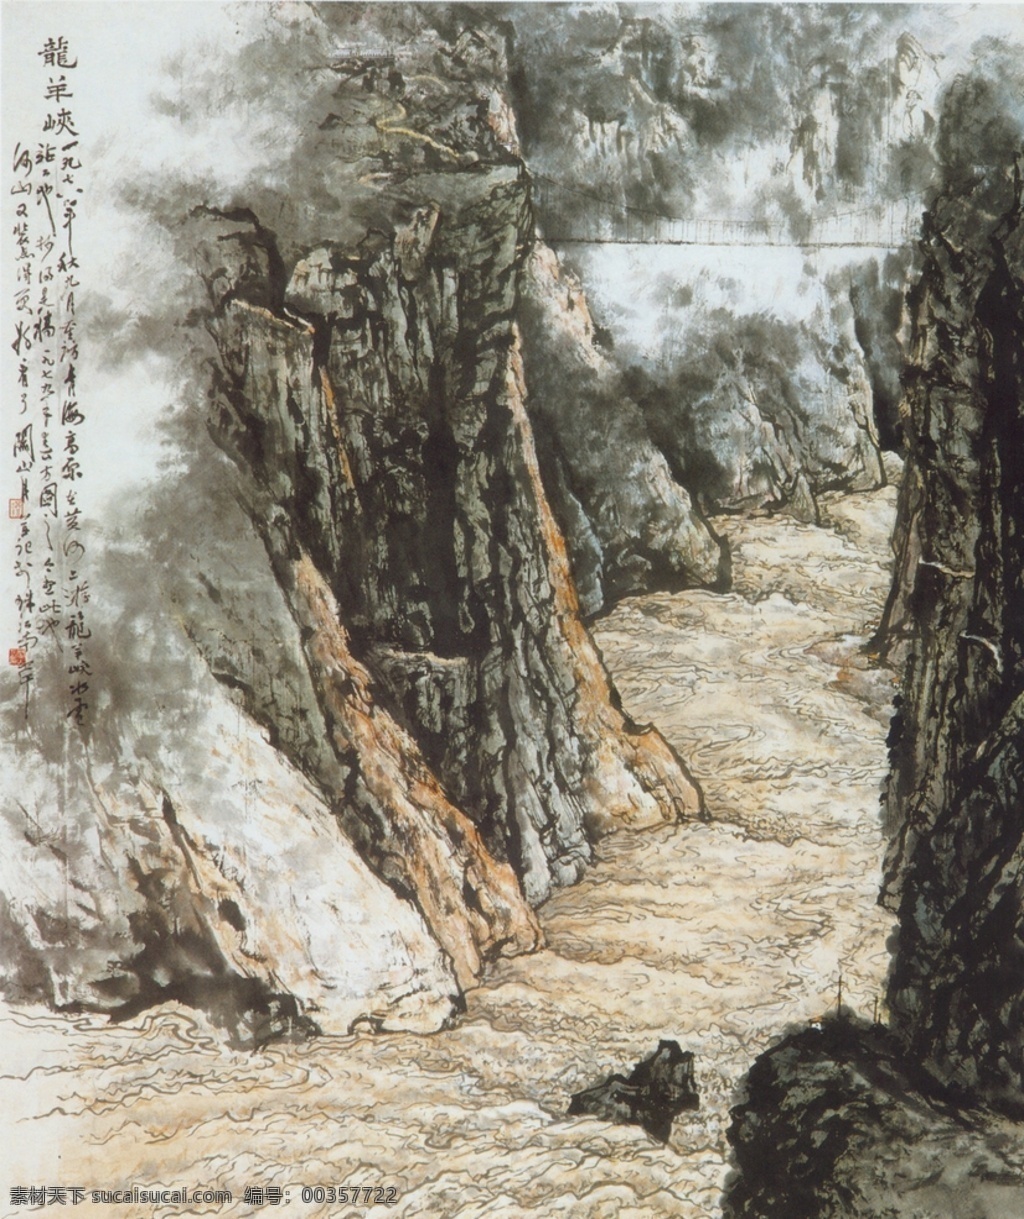 龙羊峡图图片 传统 水墨 山水 铁索桥 龙羊峡水电站 黄河 中国 现代 篇 文化艺术 绘画书法